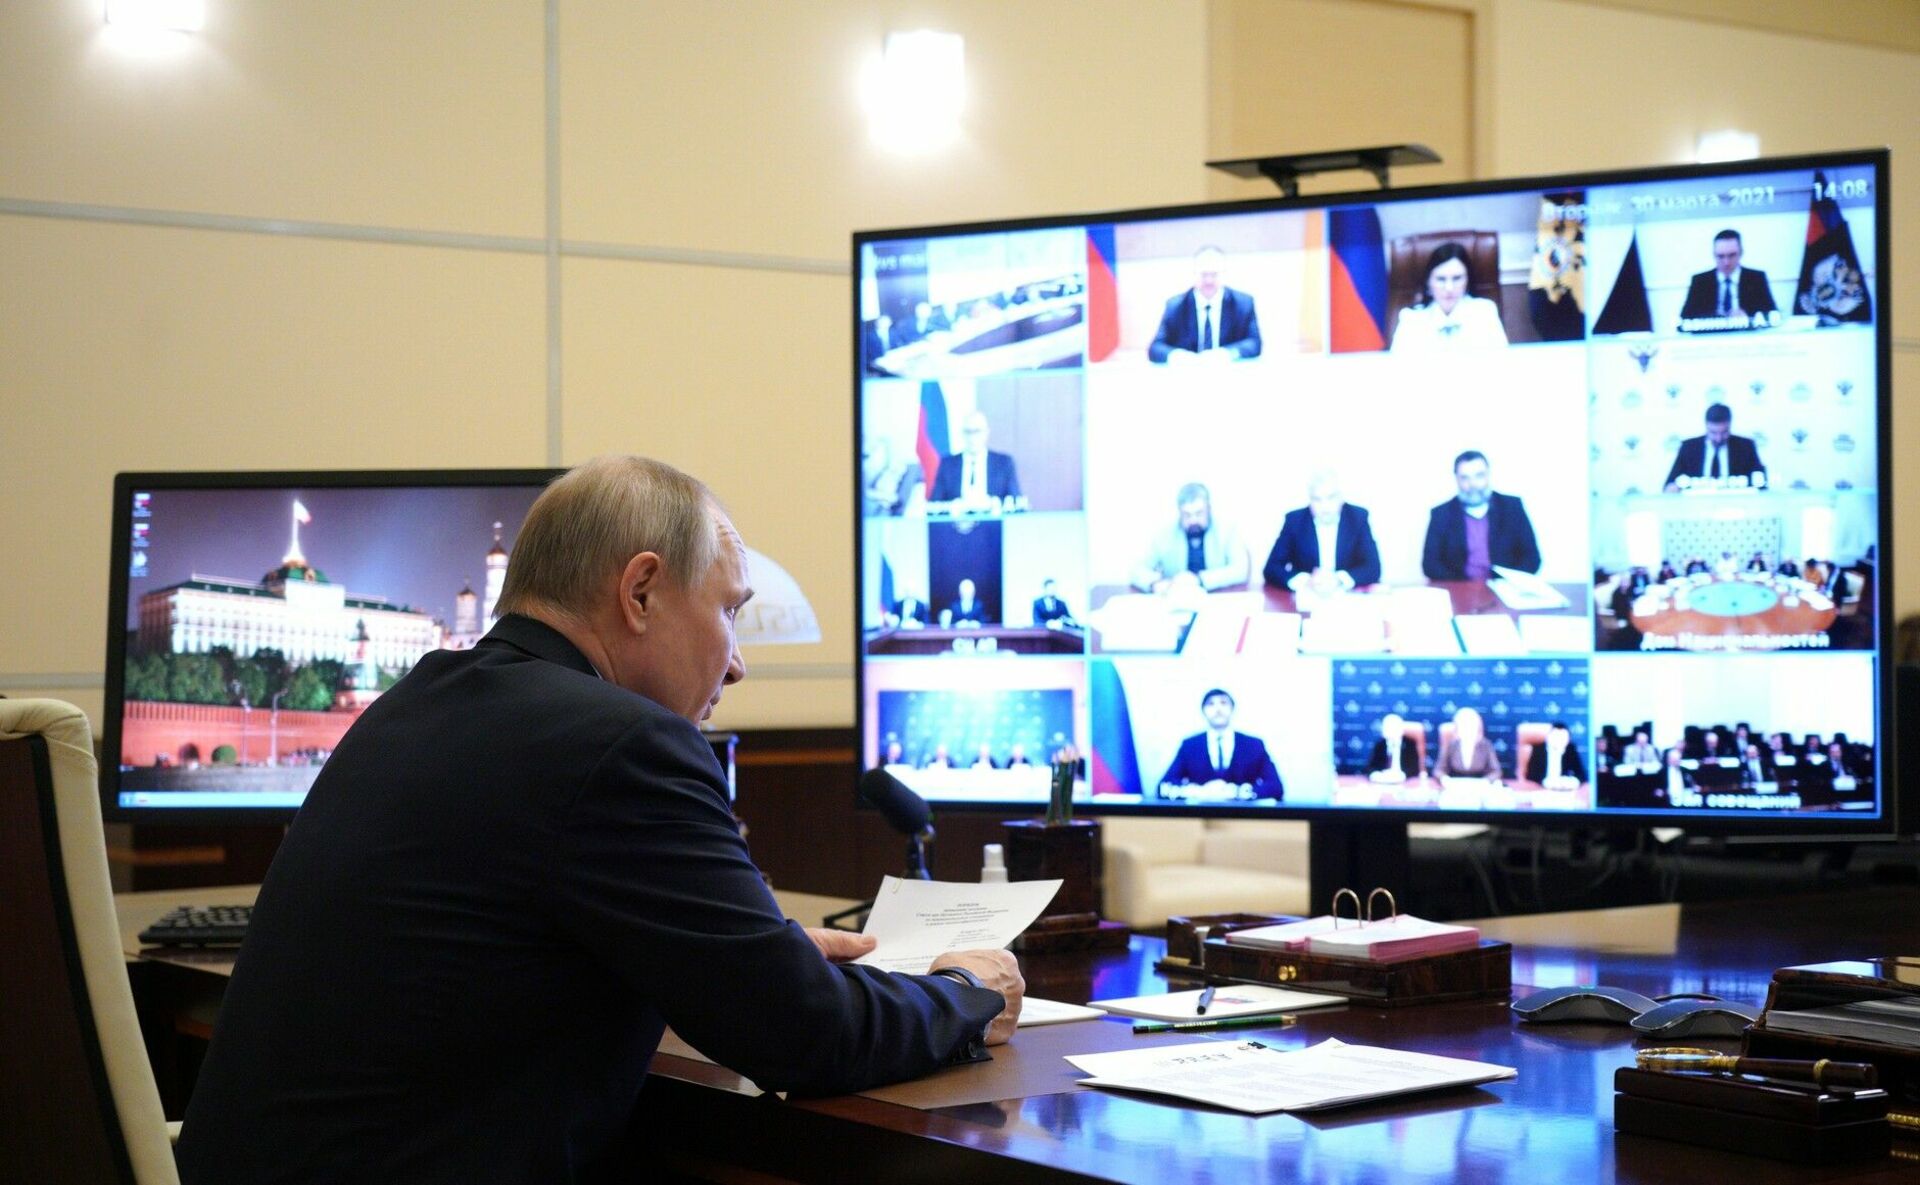 Вести россии 31 март. Видеоконференция президента Путина. Заседание совета по межнациональным отношениям.